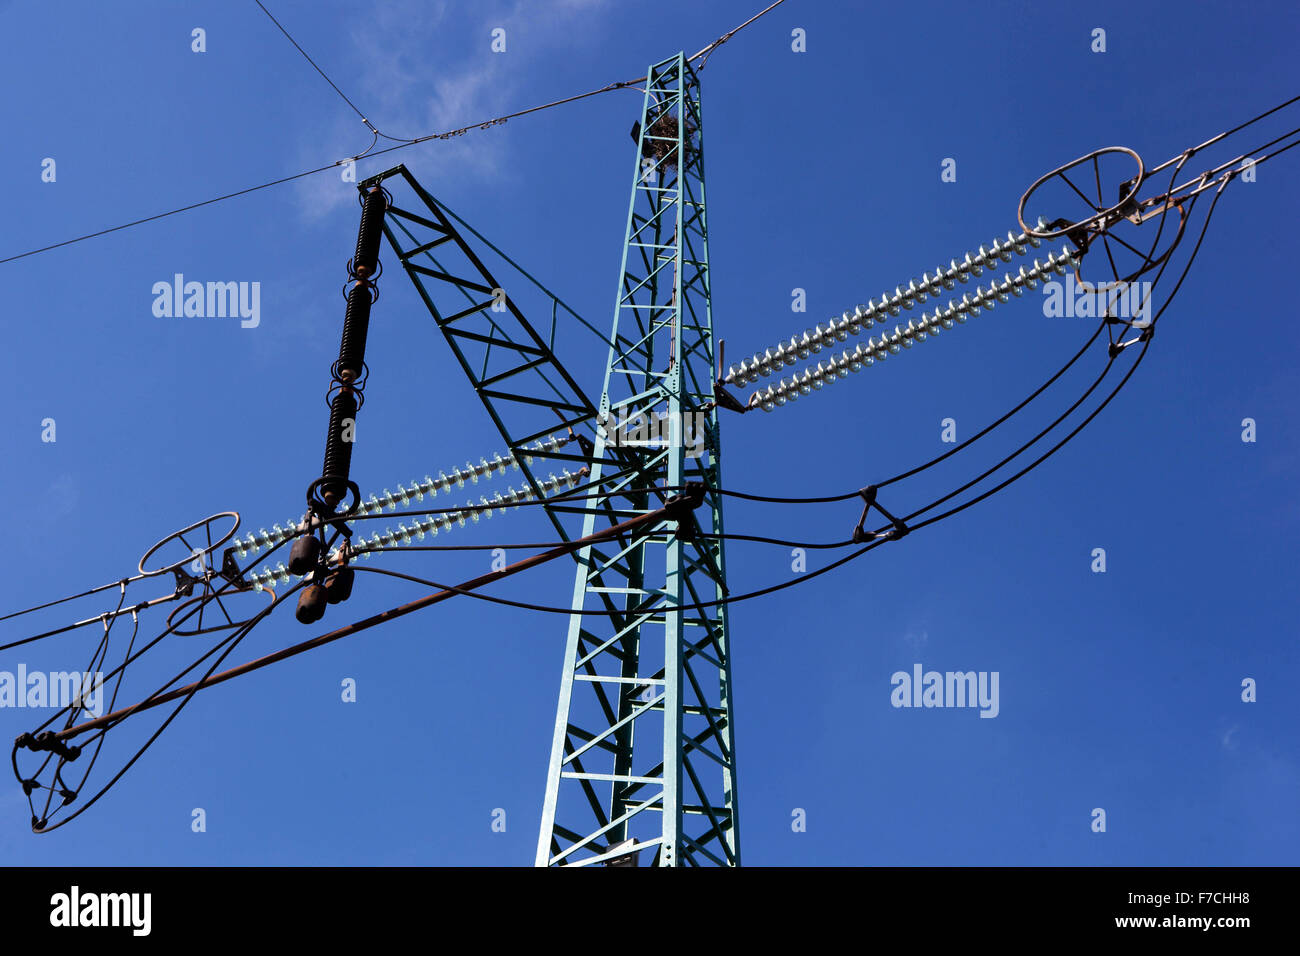 Power lines against blue sky Czech Republic Stock Photo